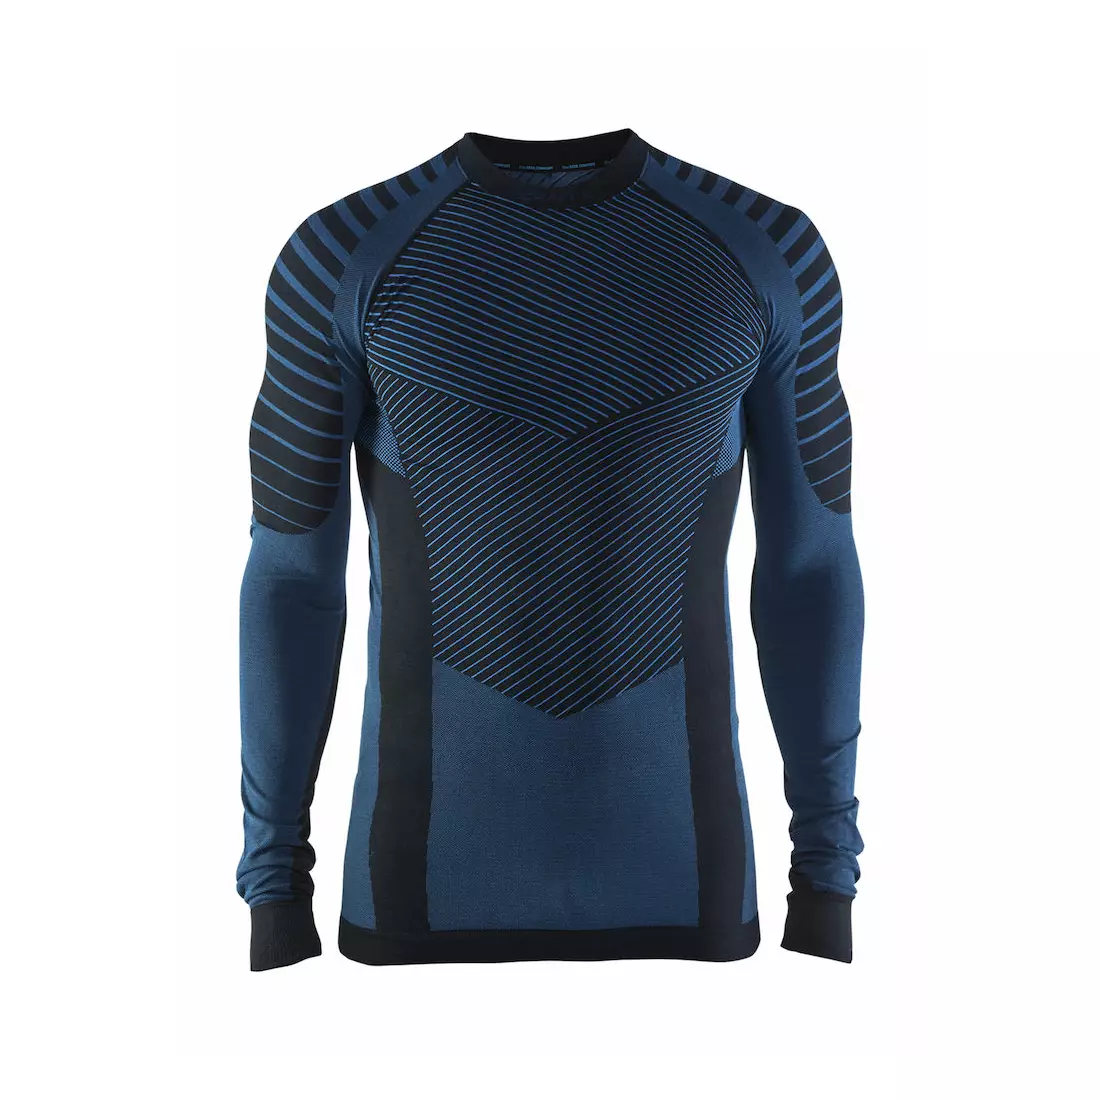 CRAFT ACTIVE INTENSITY - pánské tričko, termoprádlo s dlouhým rukávem 1905337-999336